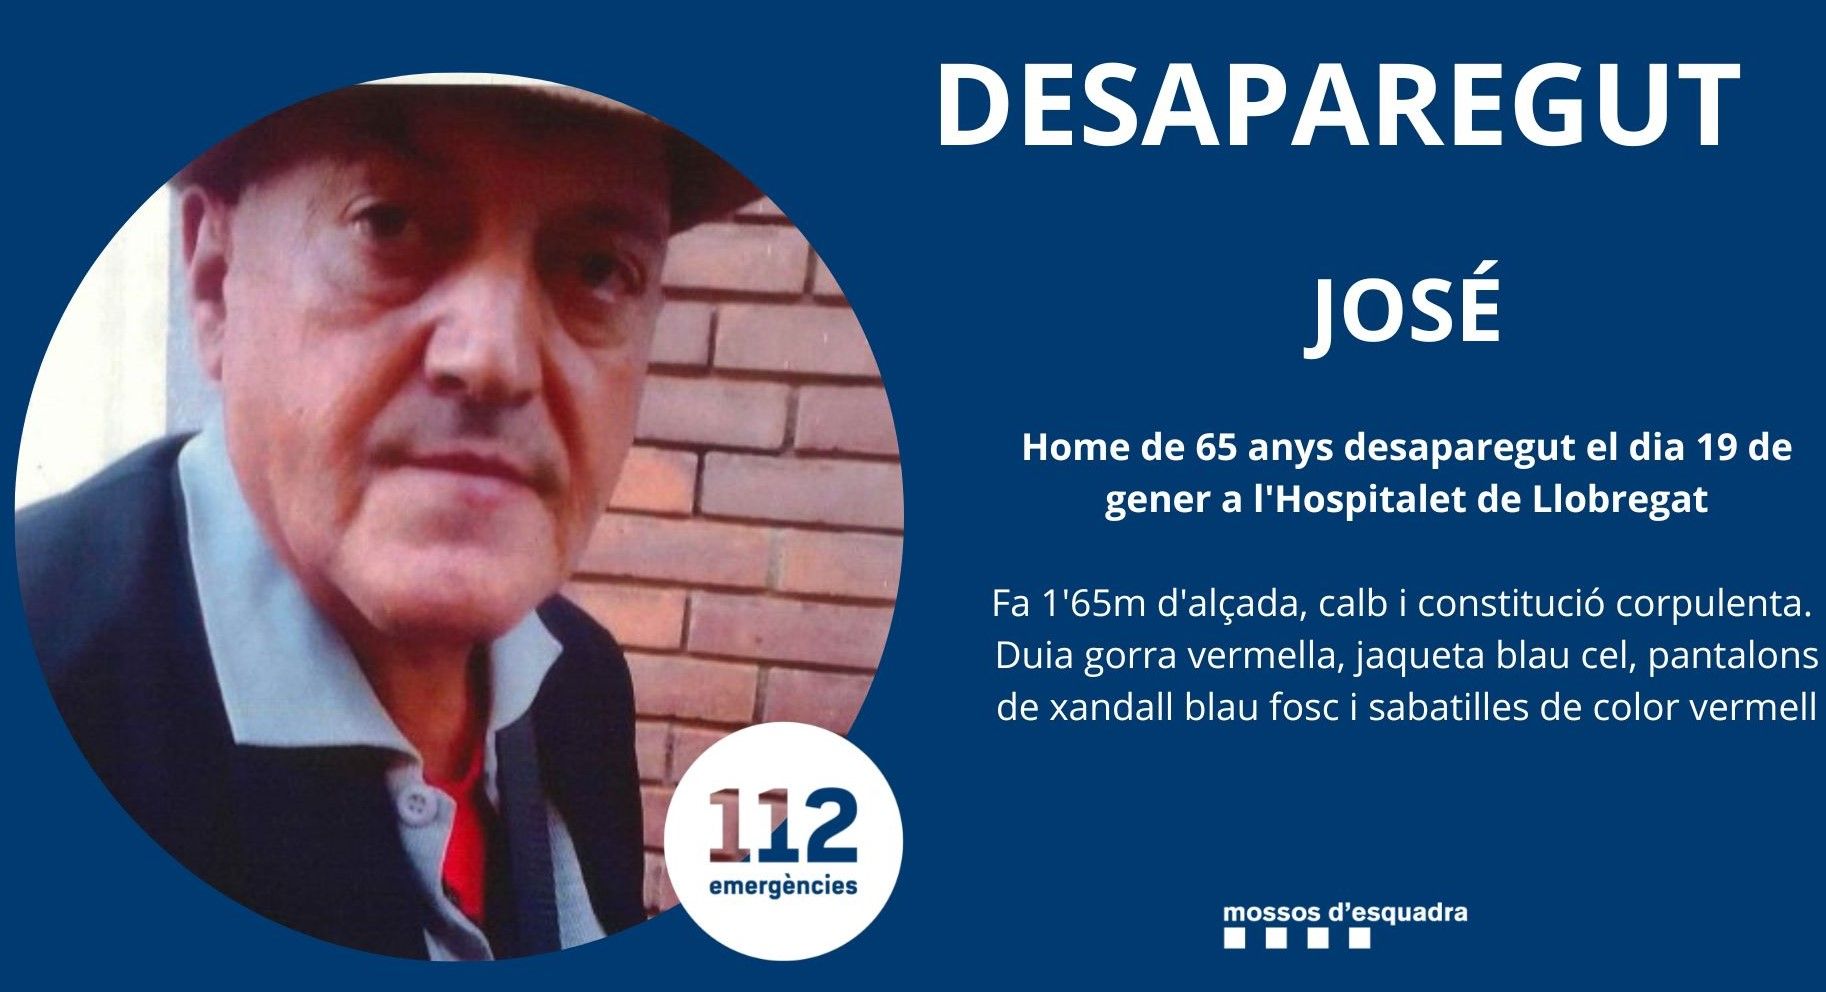 Los Mossos piden ayuda para localizar a José, vecino de L'Hospitalet desaparecido desde el 19 de enero de 2023.